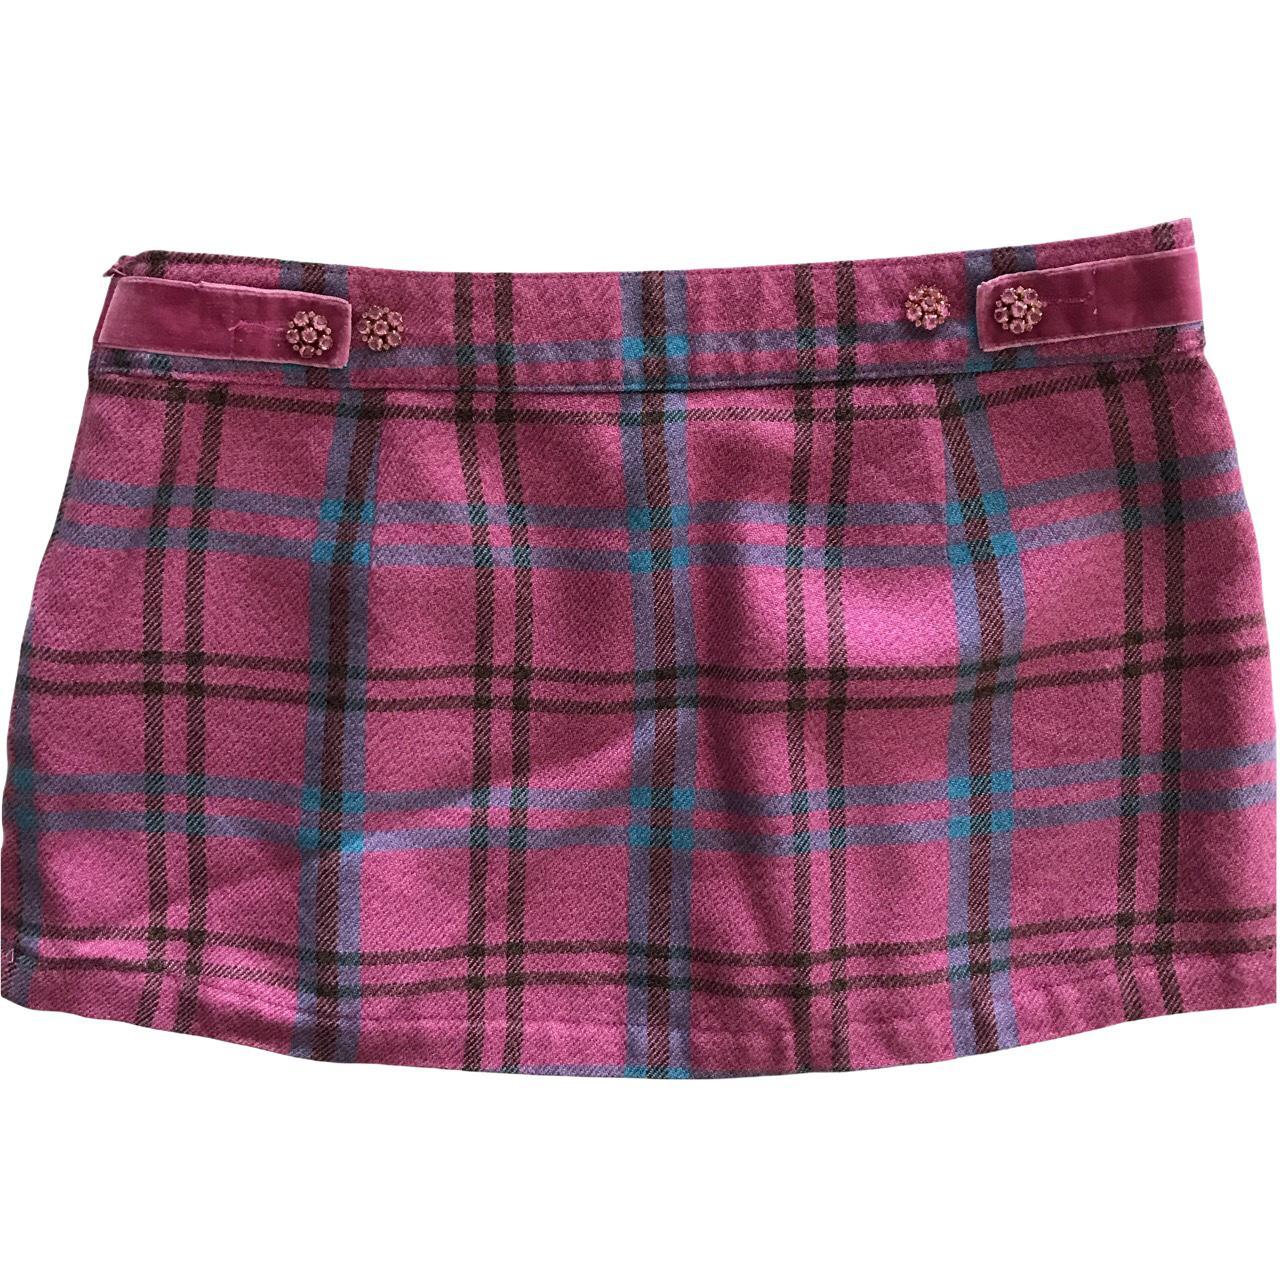 Product Image 3 - Hollister plaid mini skirt
Vintage pink